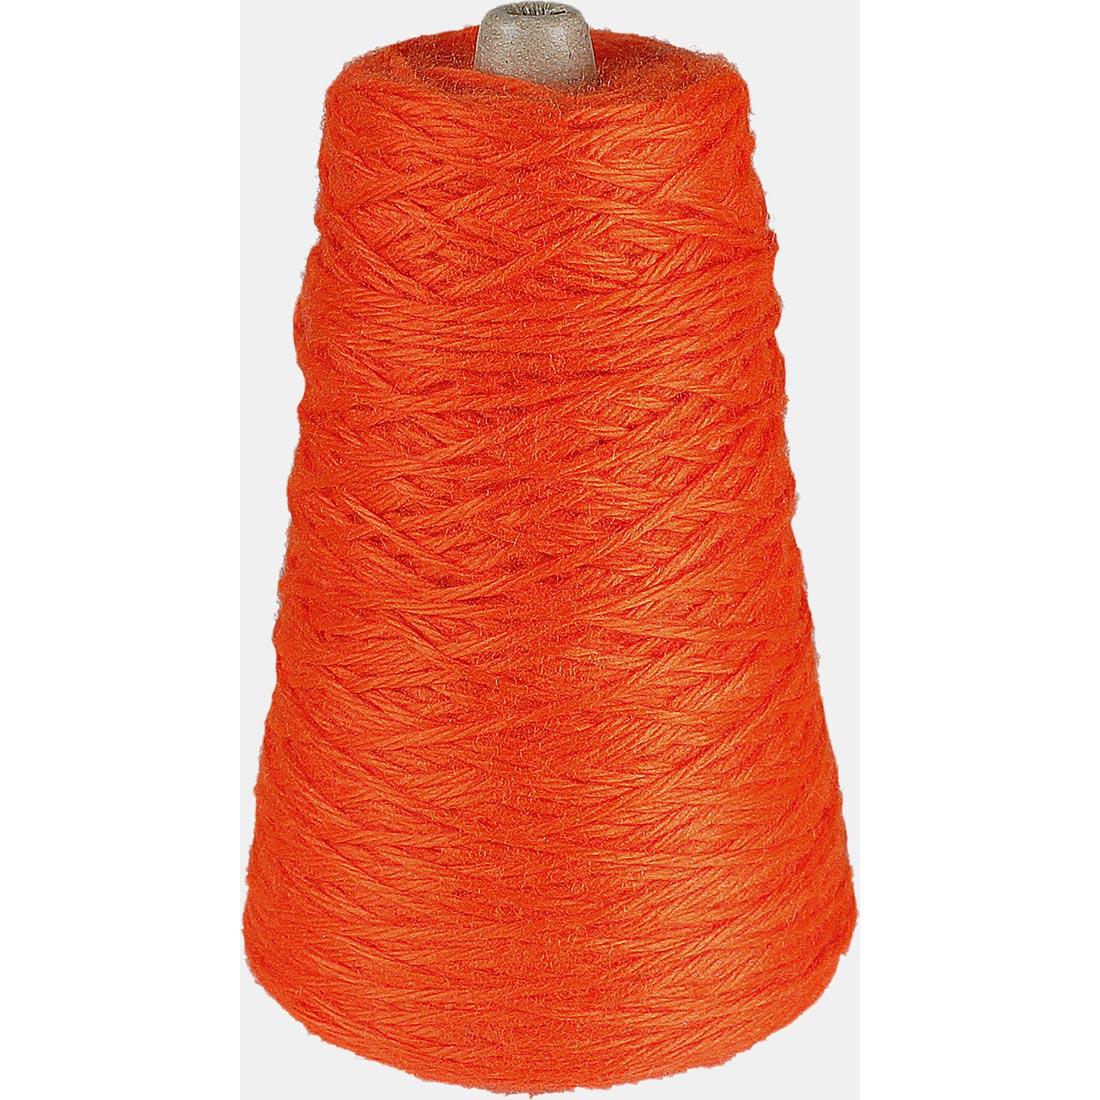 Cone of Orange Trait-tex 4-Ply Yarn